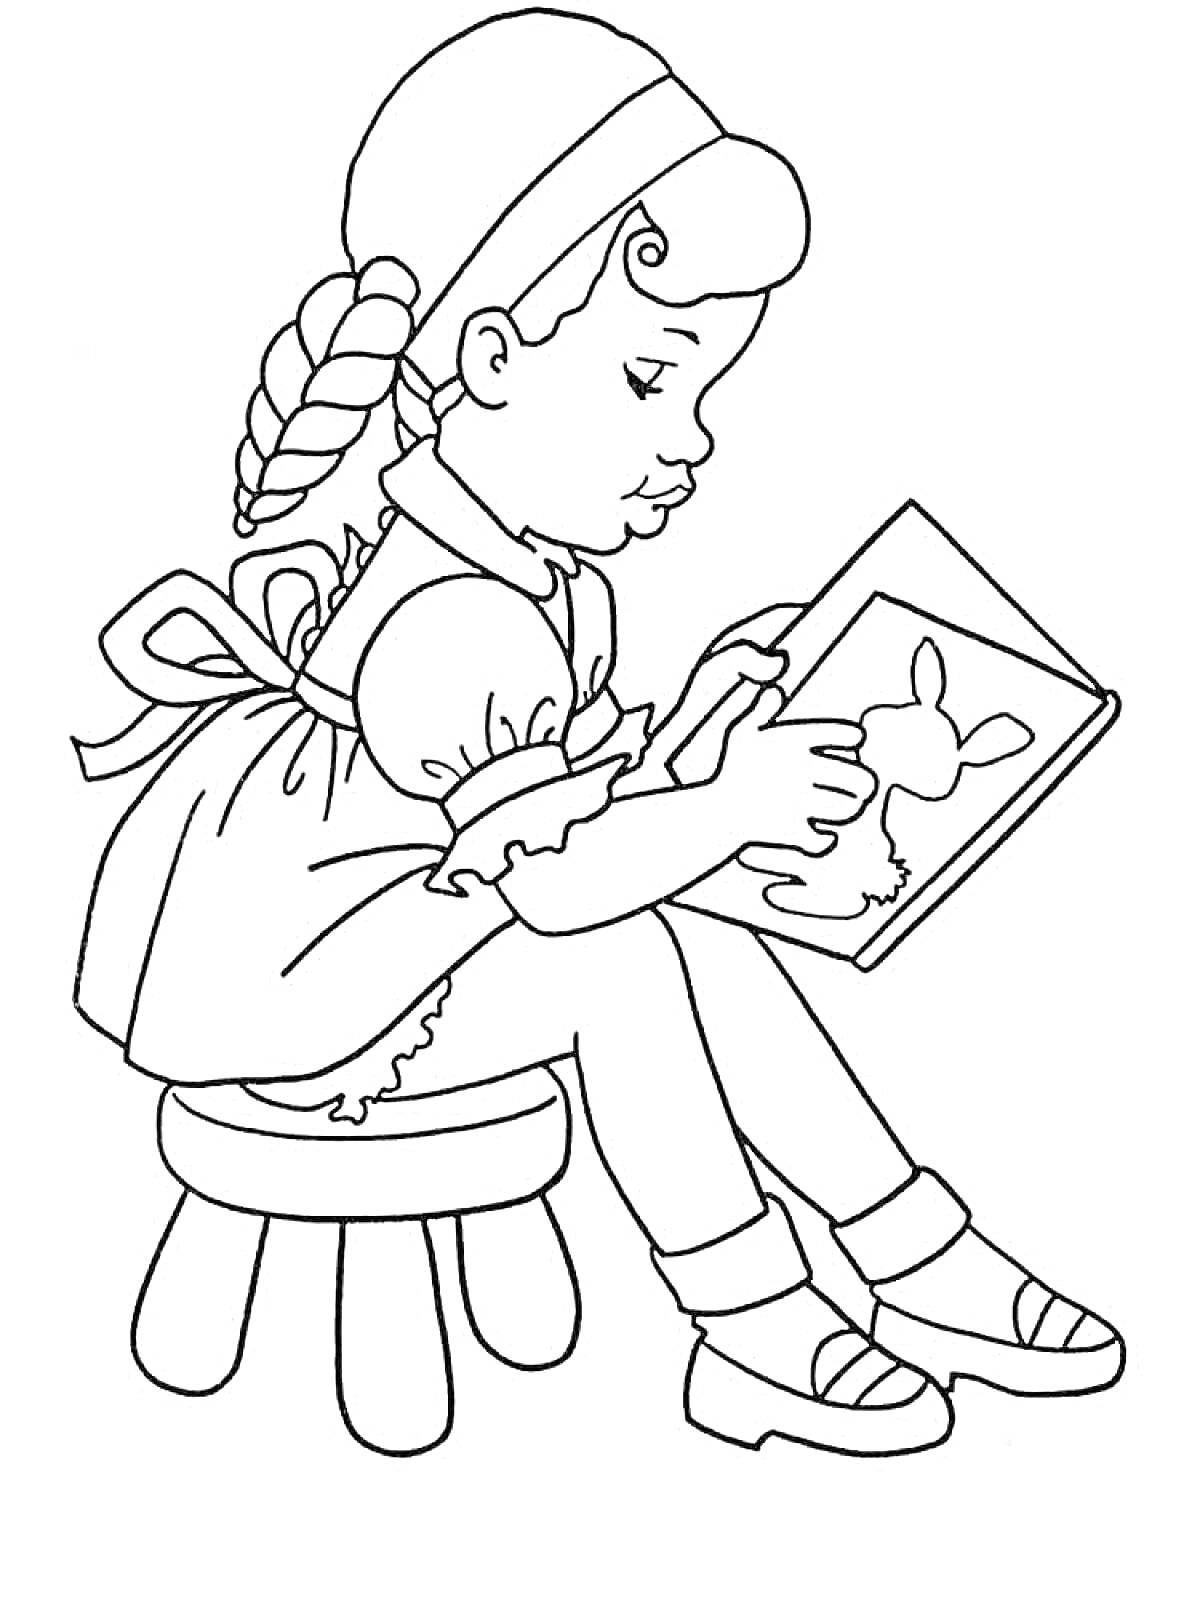 Девочка на табуретке, читающая книгу с изображением кролика